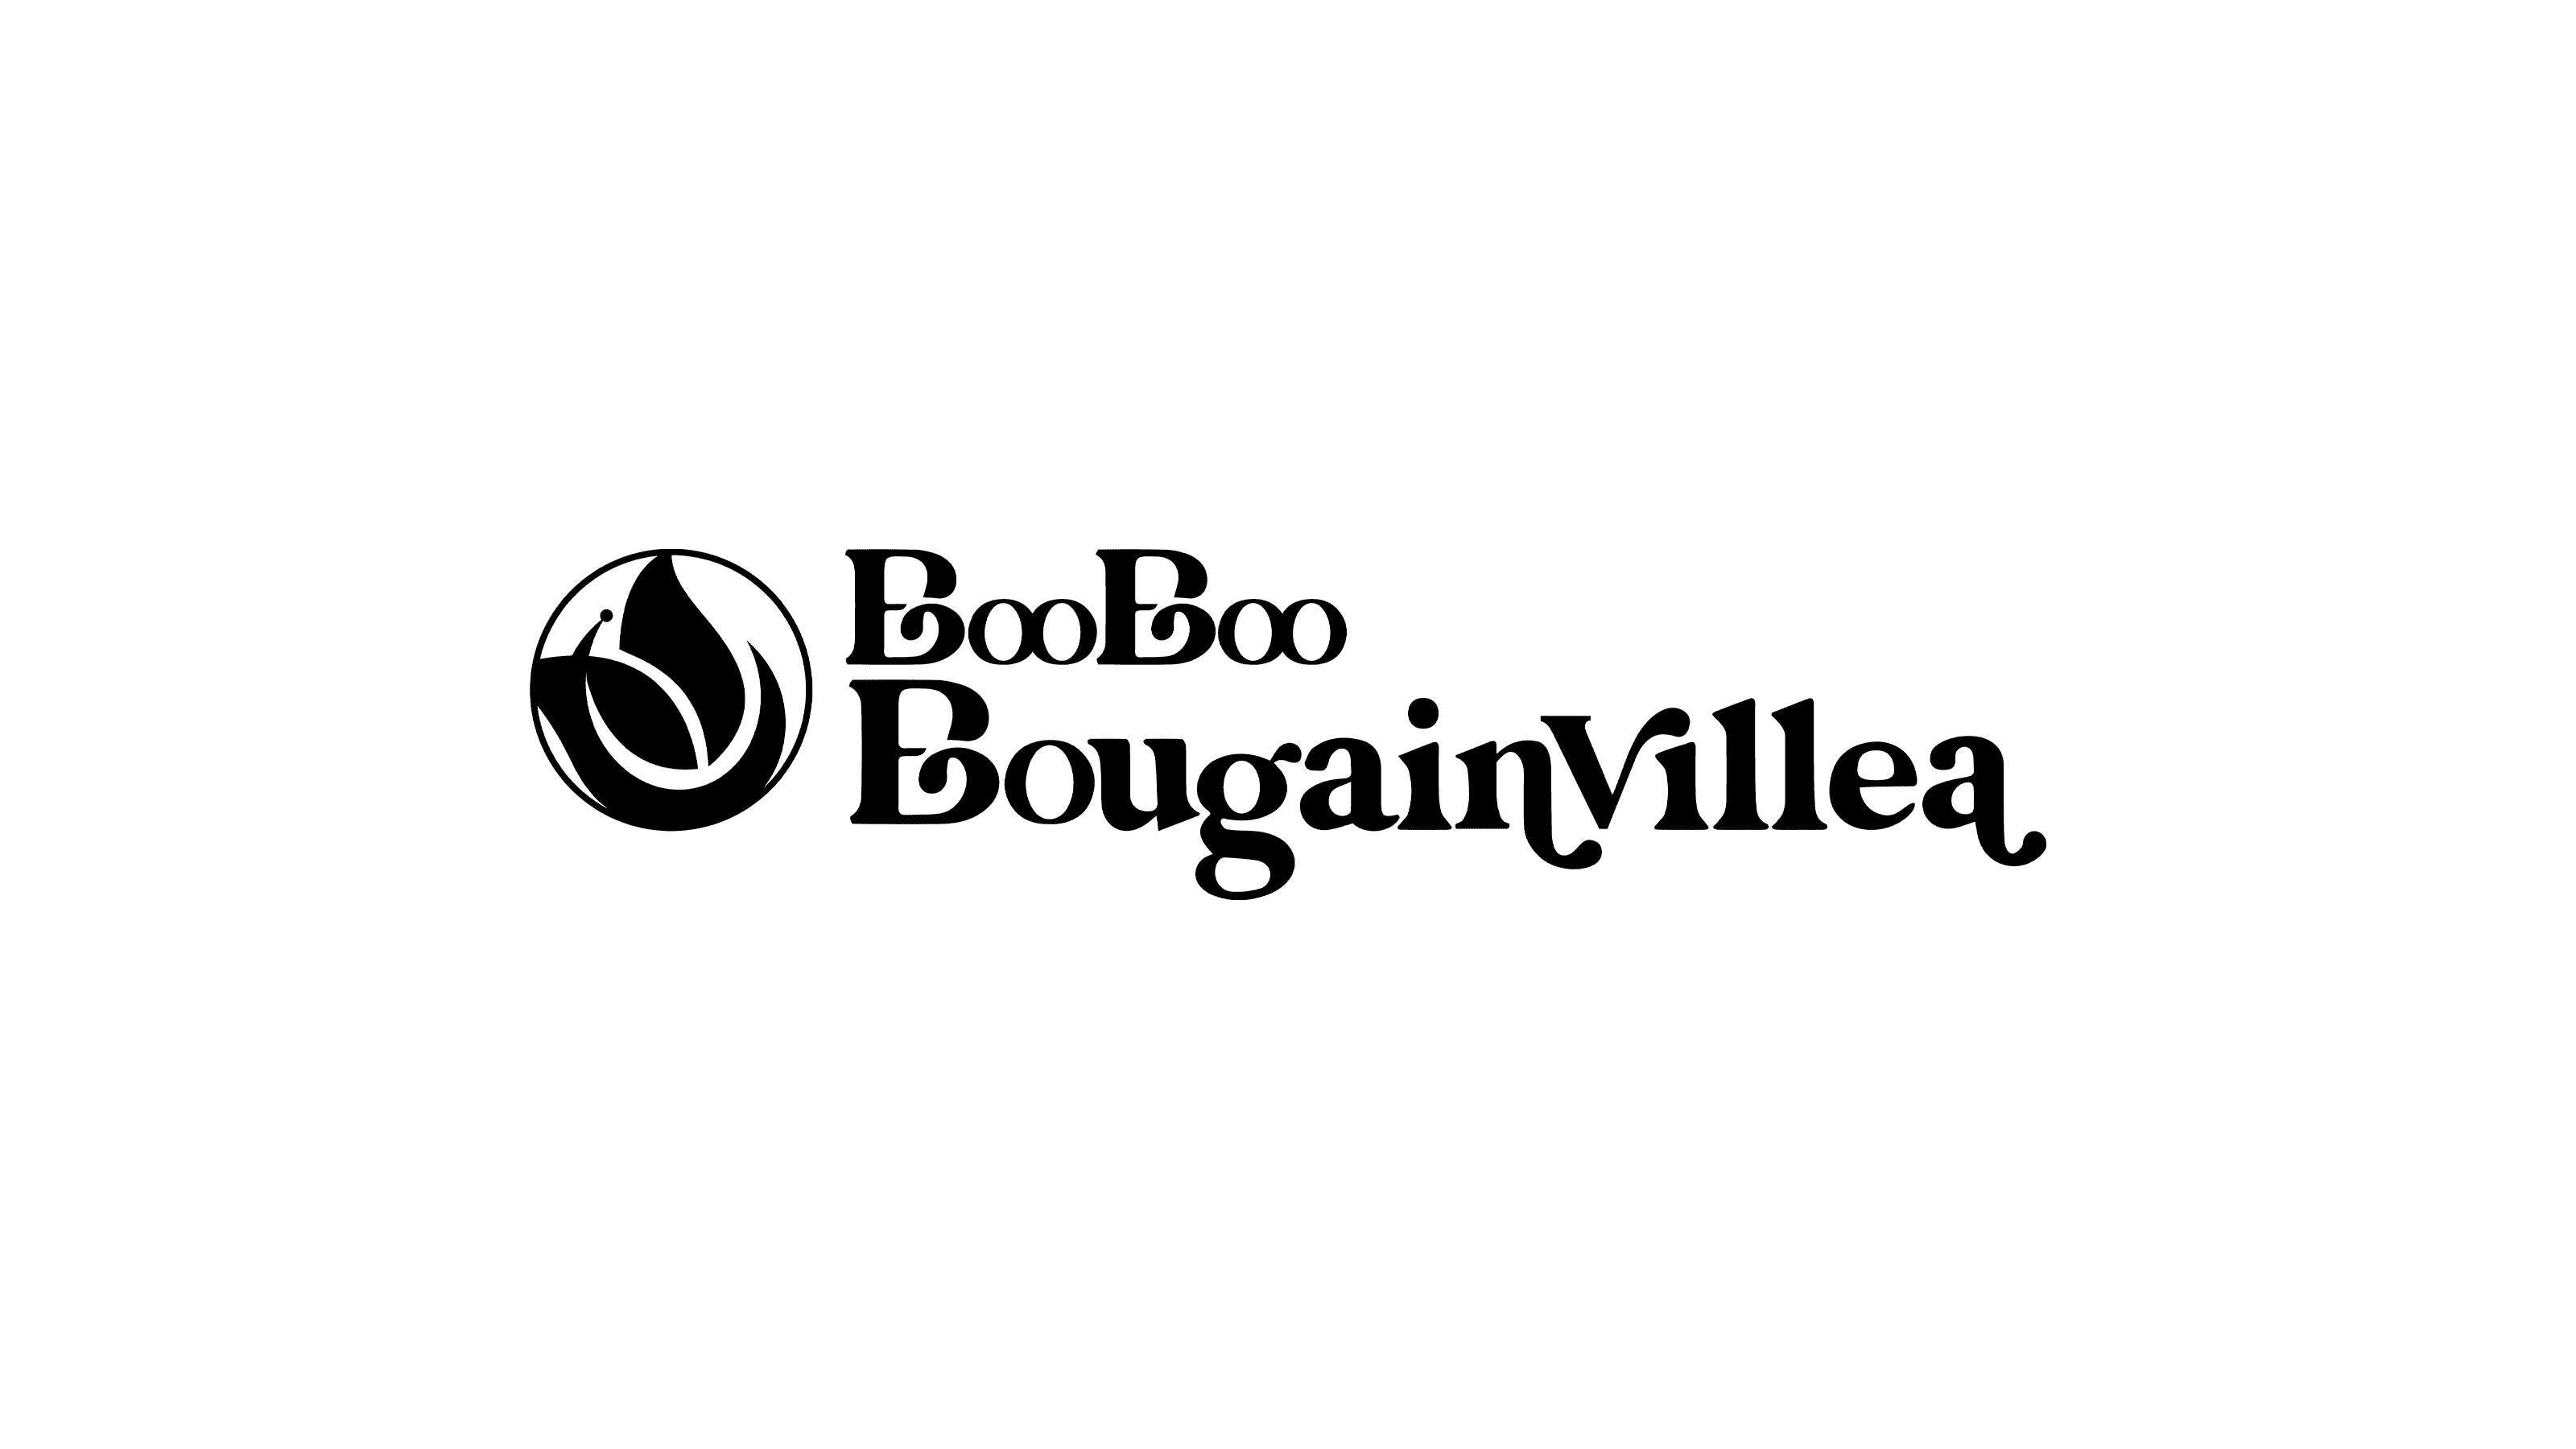 Boo Boo Bougainvillea